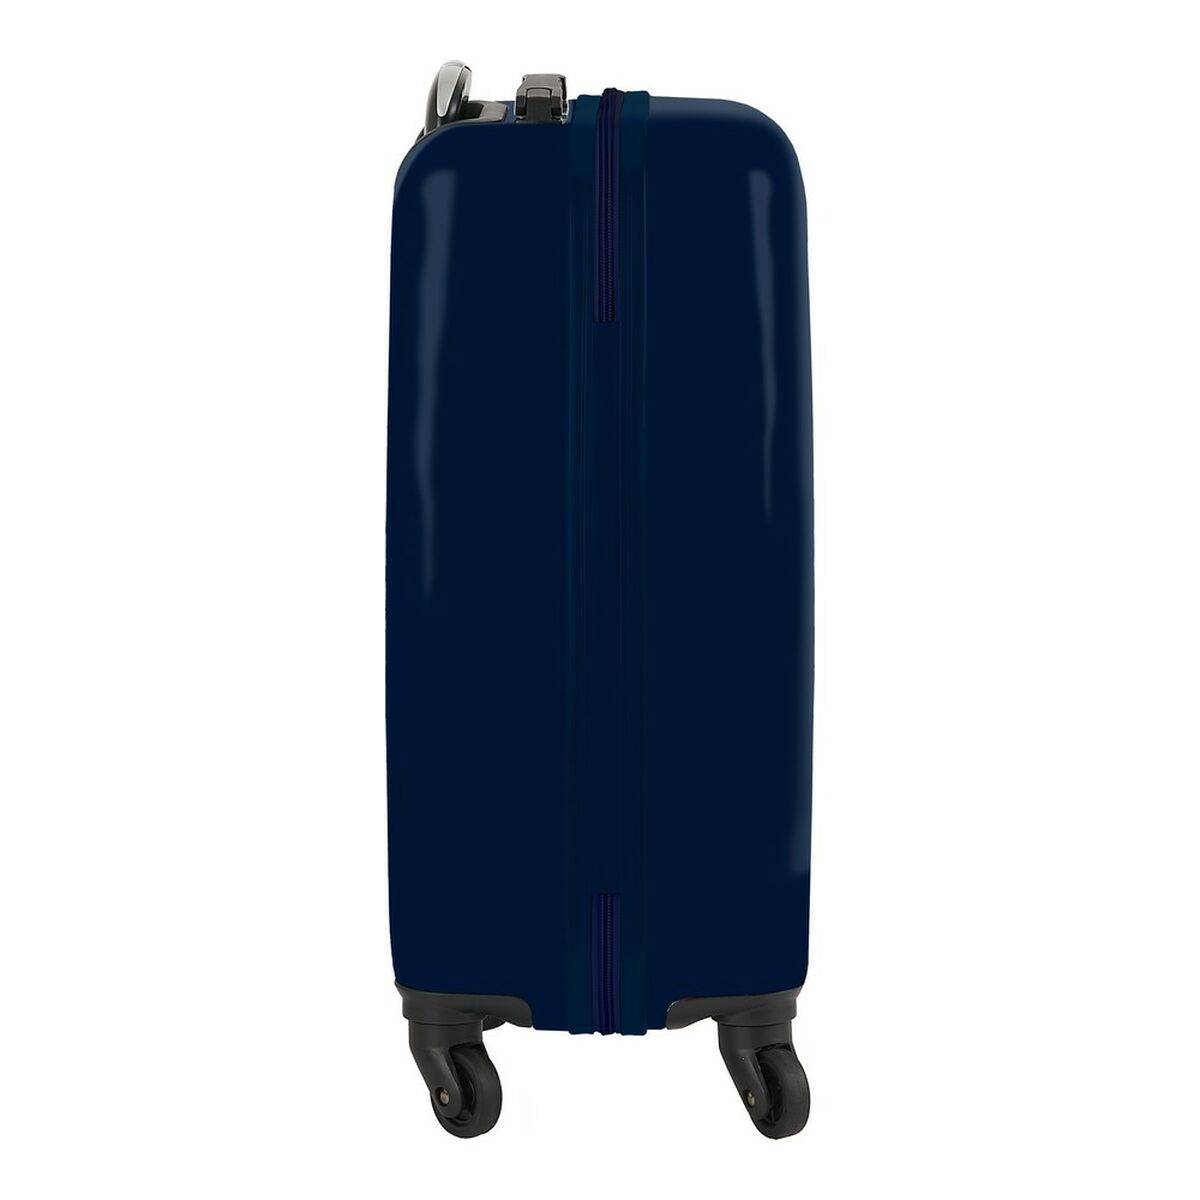 Cabin suitcase El Niño Life is Fun Multicolour 20'' (34.5 x 55 x 20 cm)